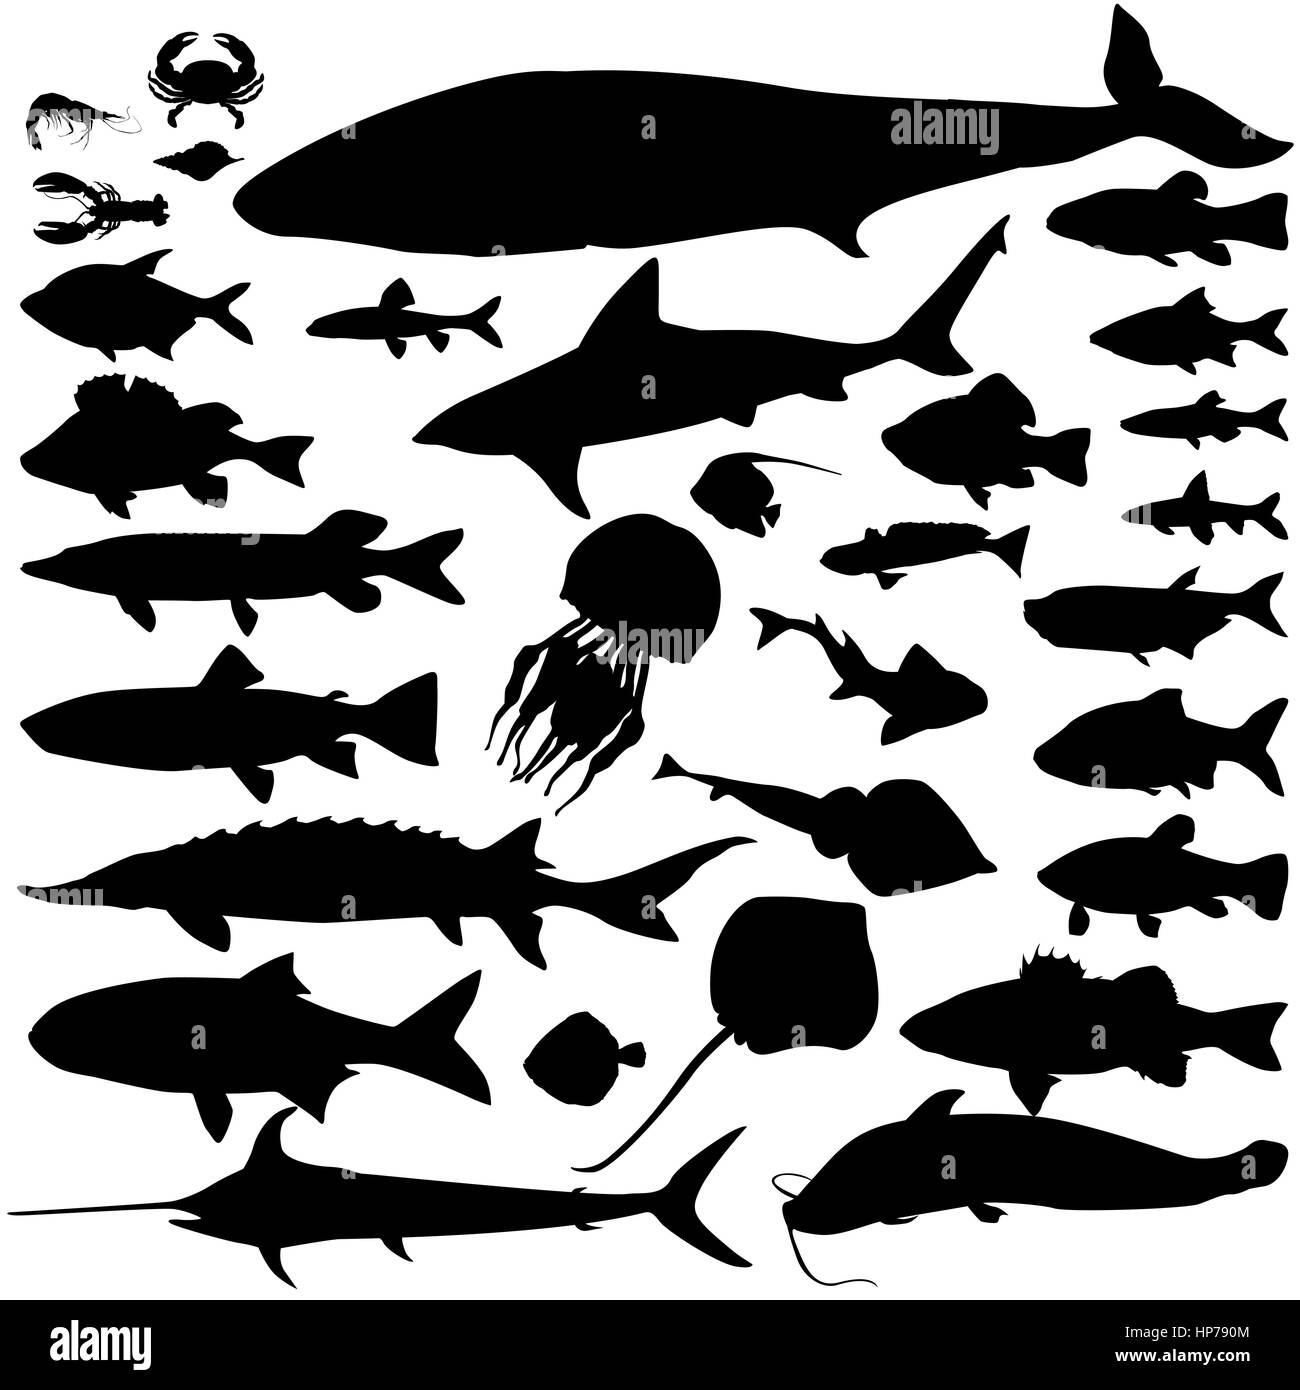 Fluss, Meer Fisch essen Silhouette. marine Fische und Säugetiere. Meeresfrüchte icon Sammlung. Ocean underwater wildlife Zeichen Stock Vektor